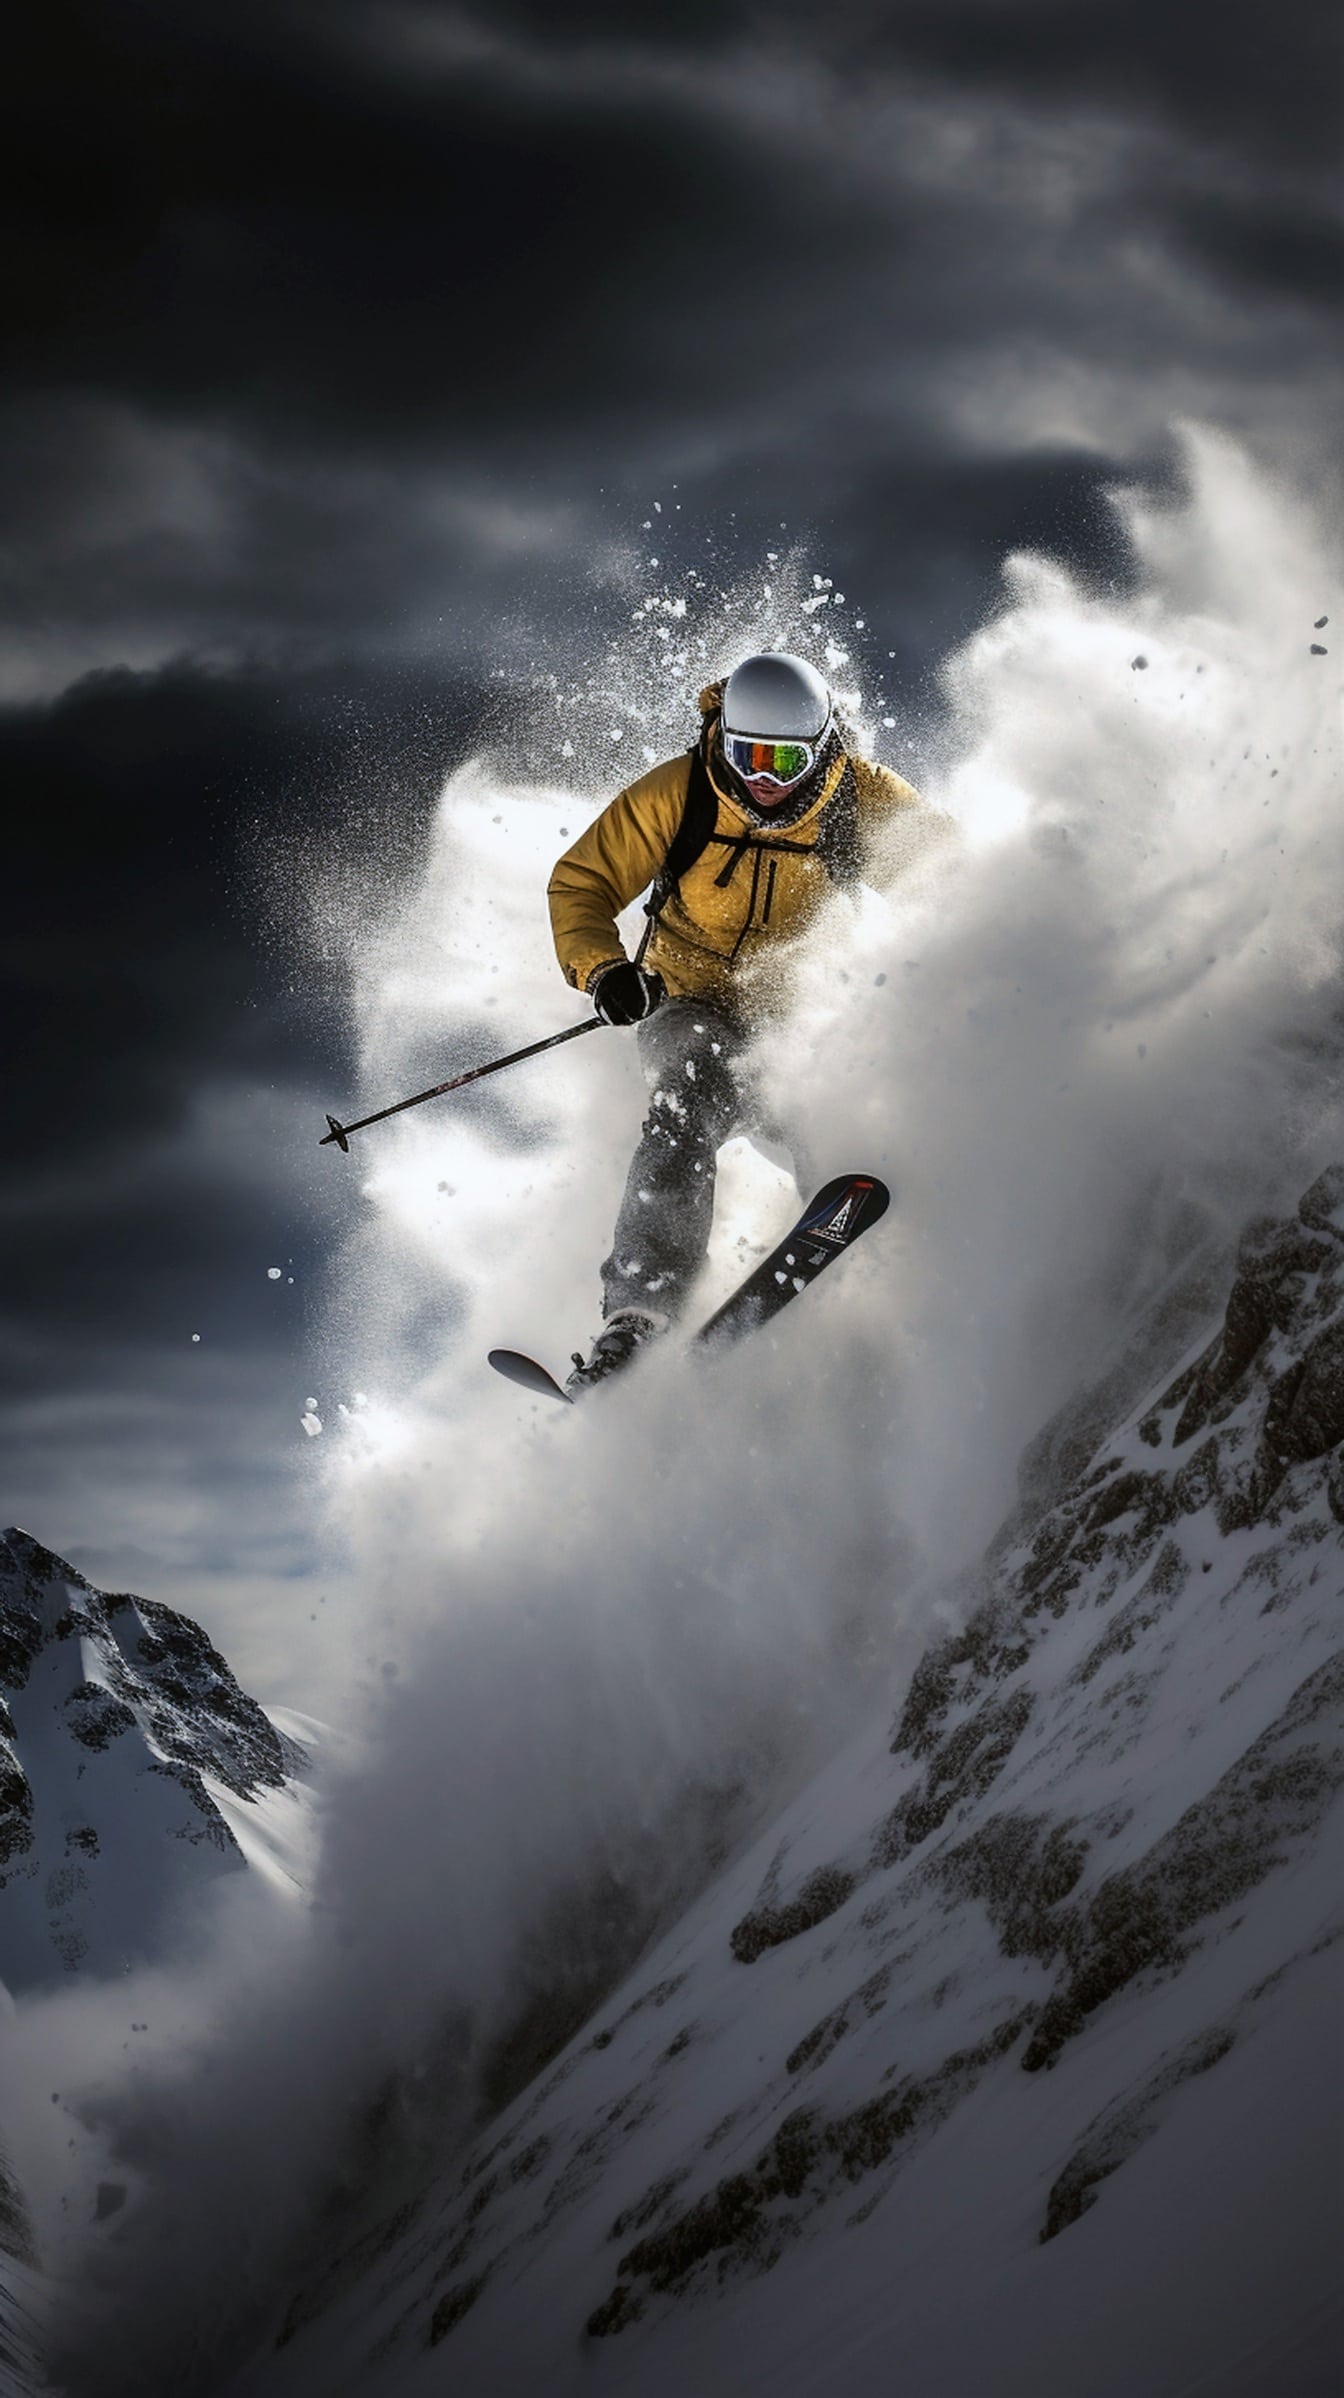 Kellertävänruskeaan takkiin pukeutunut hiihtäjä hyppäämässä lumisesta kalliosta